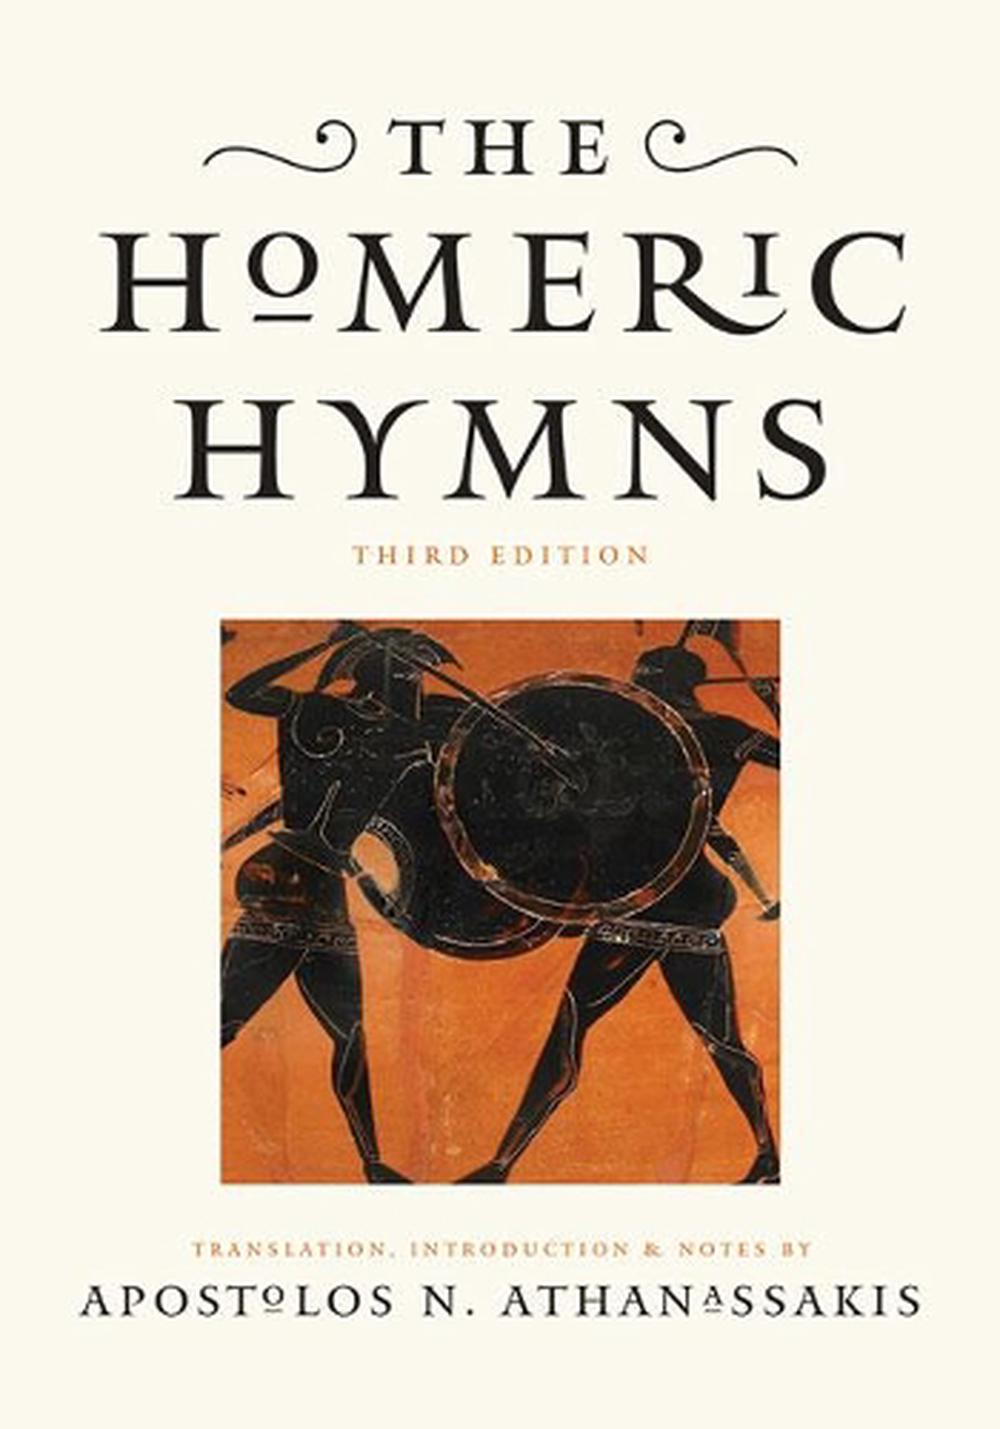 hymn to hermes